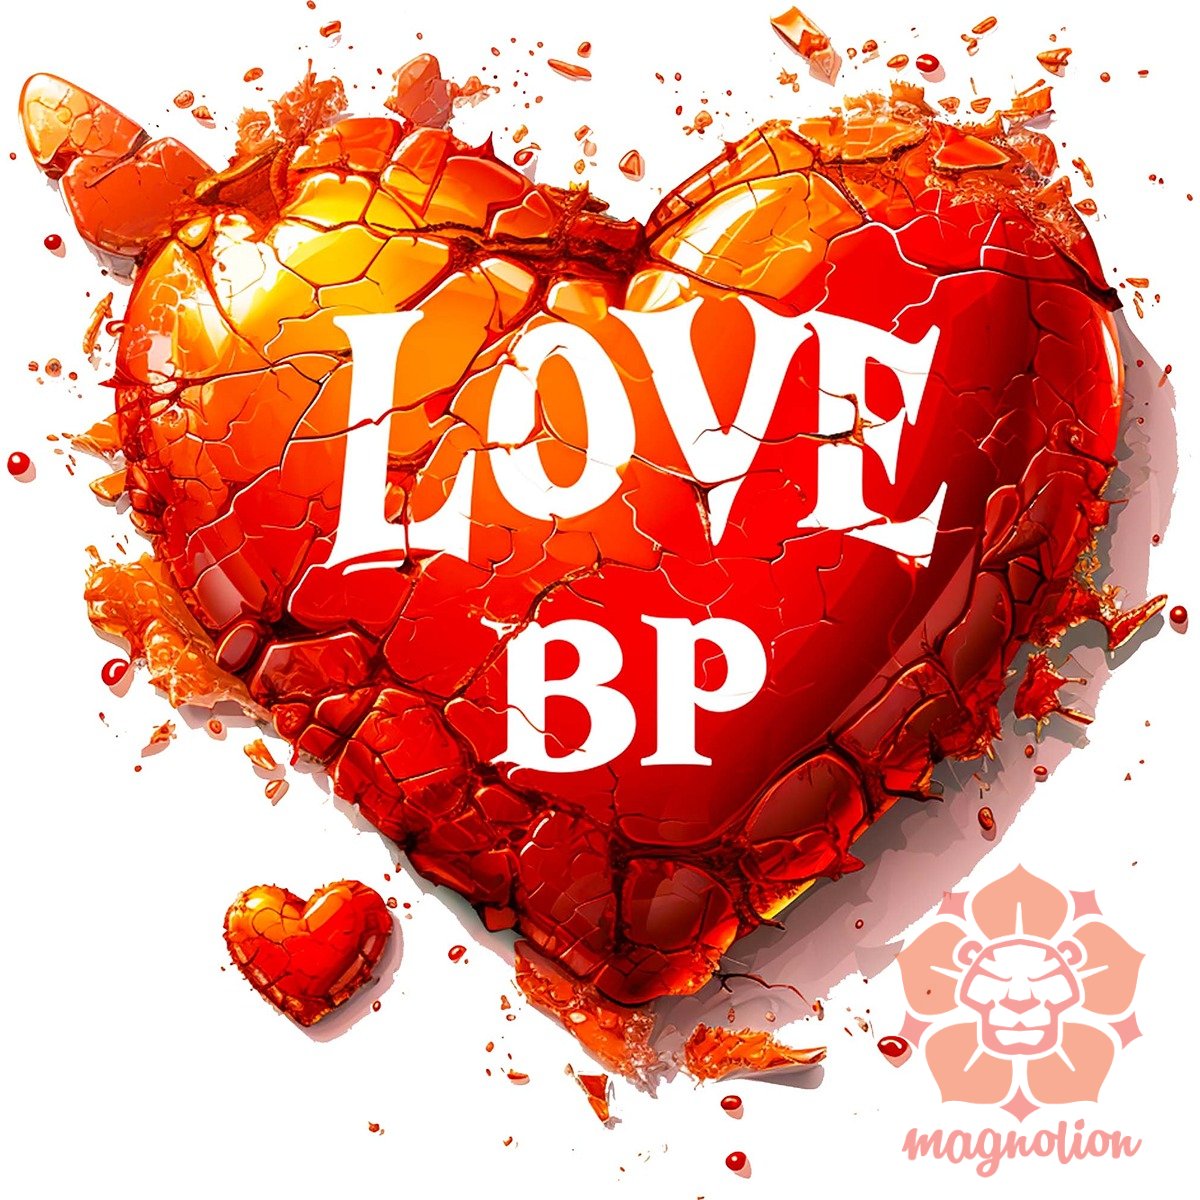 Love BP v22